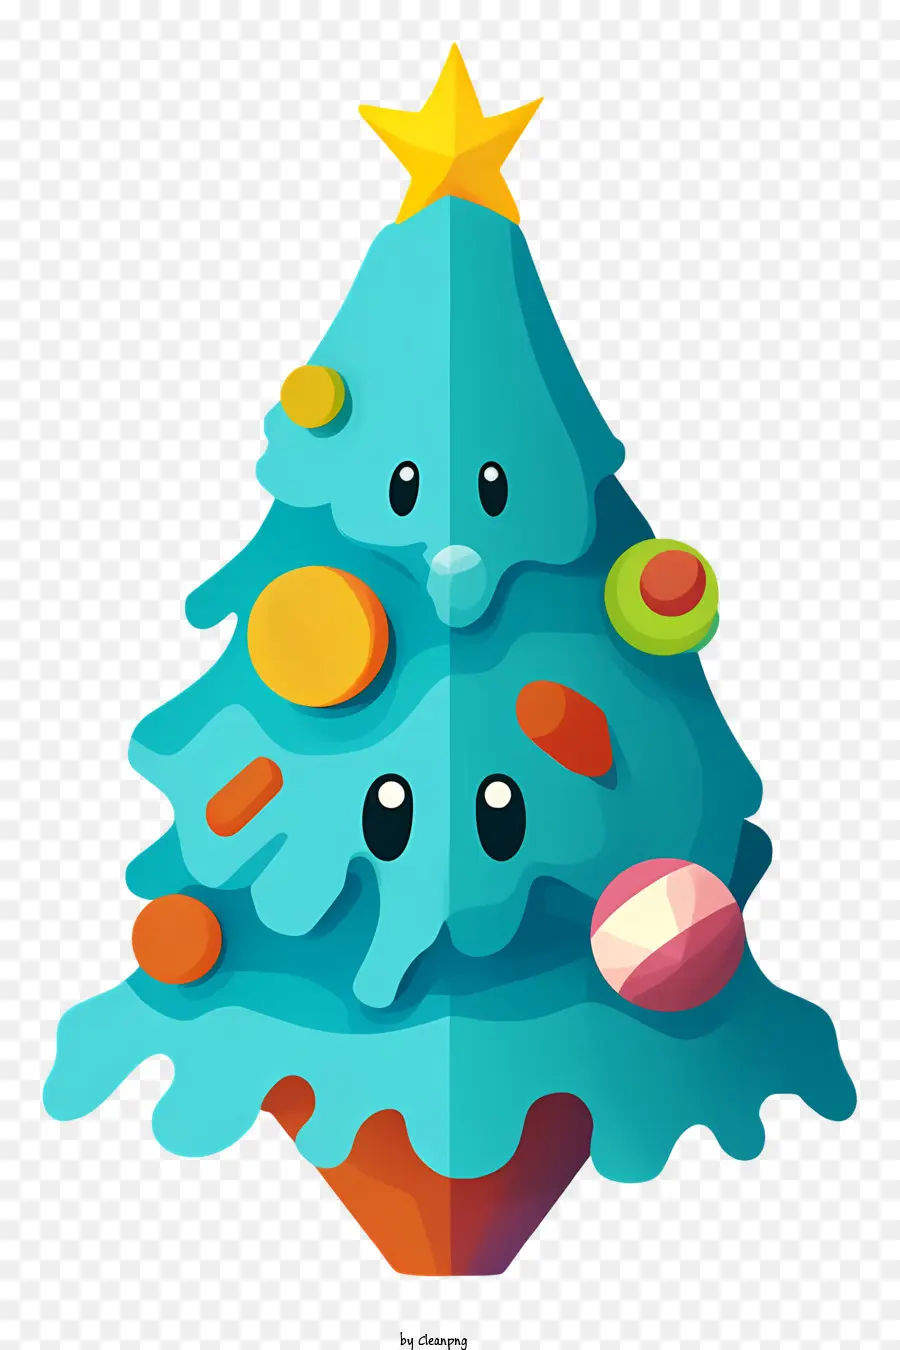 cây giáng sinh - Cây Giáng sinh lễ hội với khuôn mặt và đồ trang trí hạnh phúc